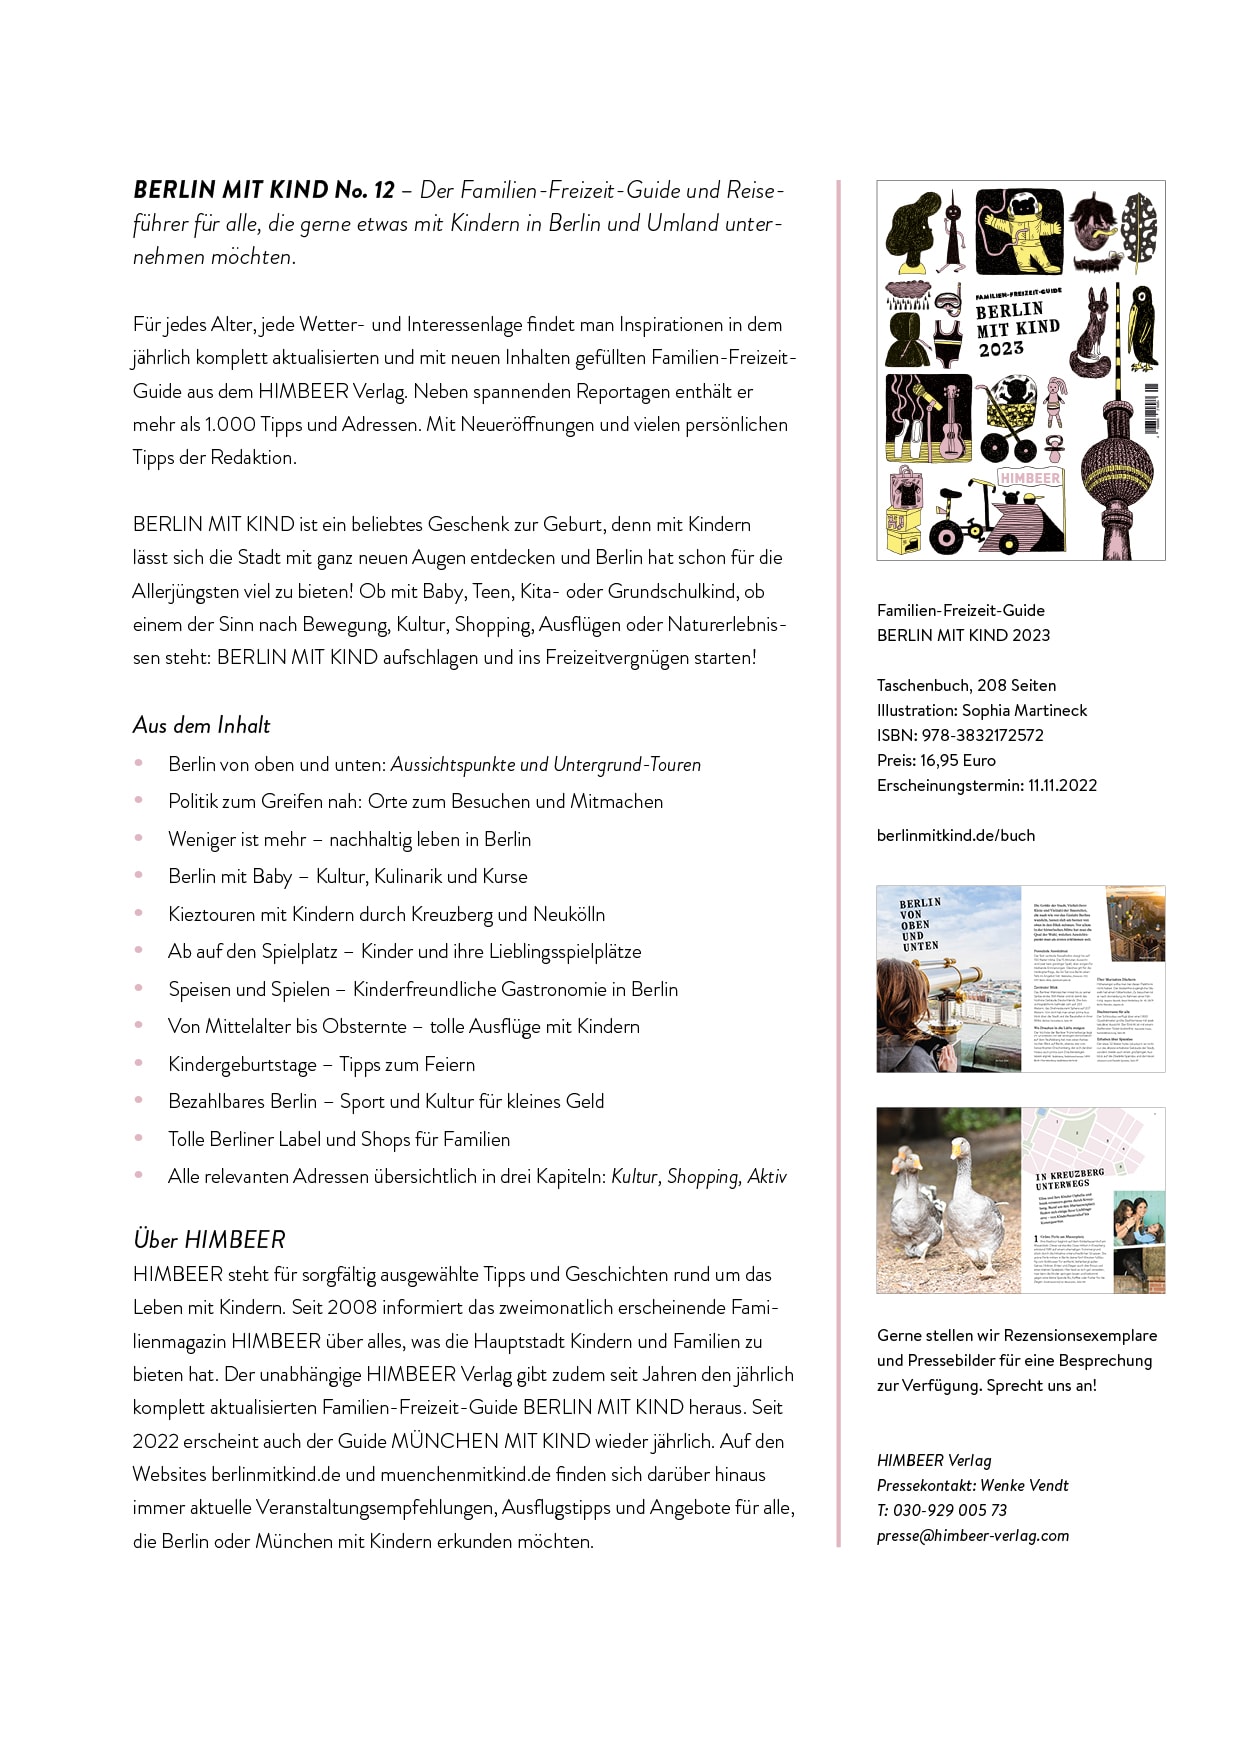 Himbeer Pressebereich: Presseinfos Zum Familien-Freizeit-Guide Berlin Mit Kind 2023 // Himbeer